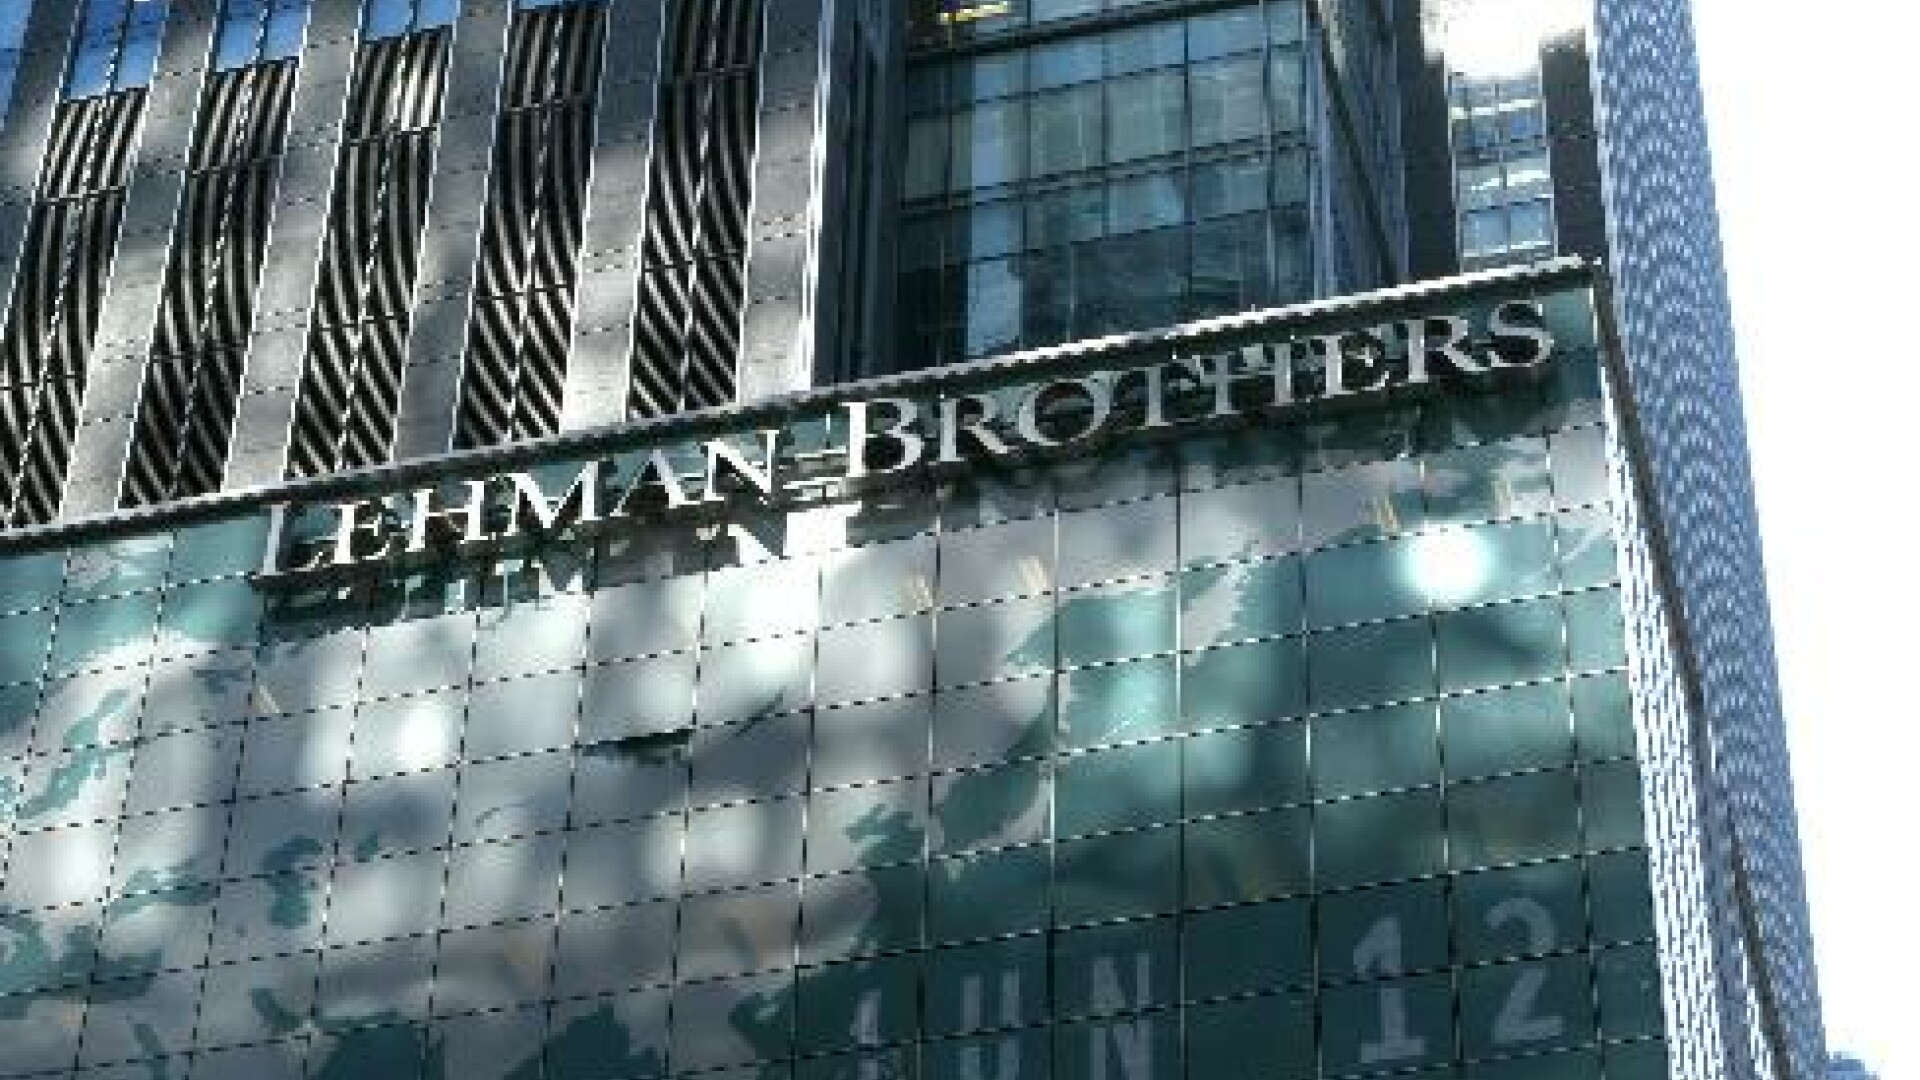 Fostul sef al Lehman Brothers isi vinde tablourile